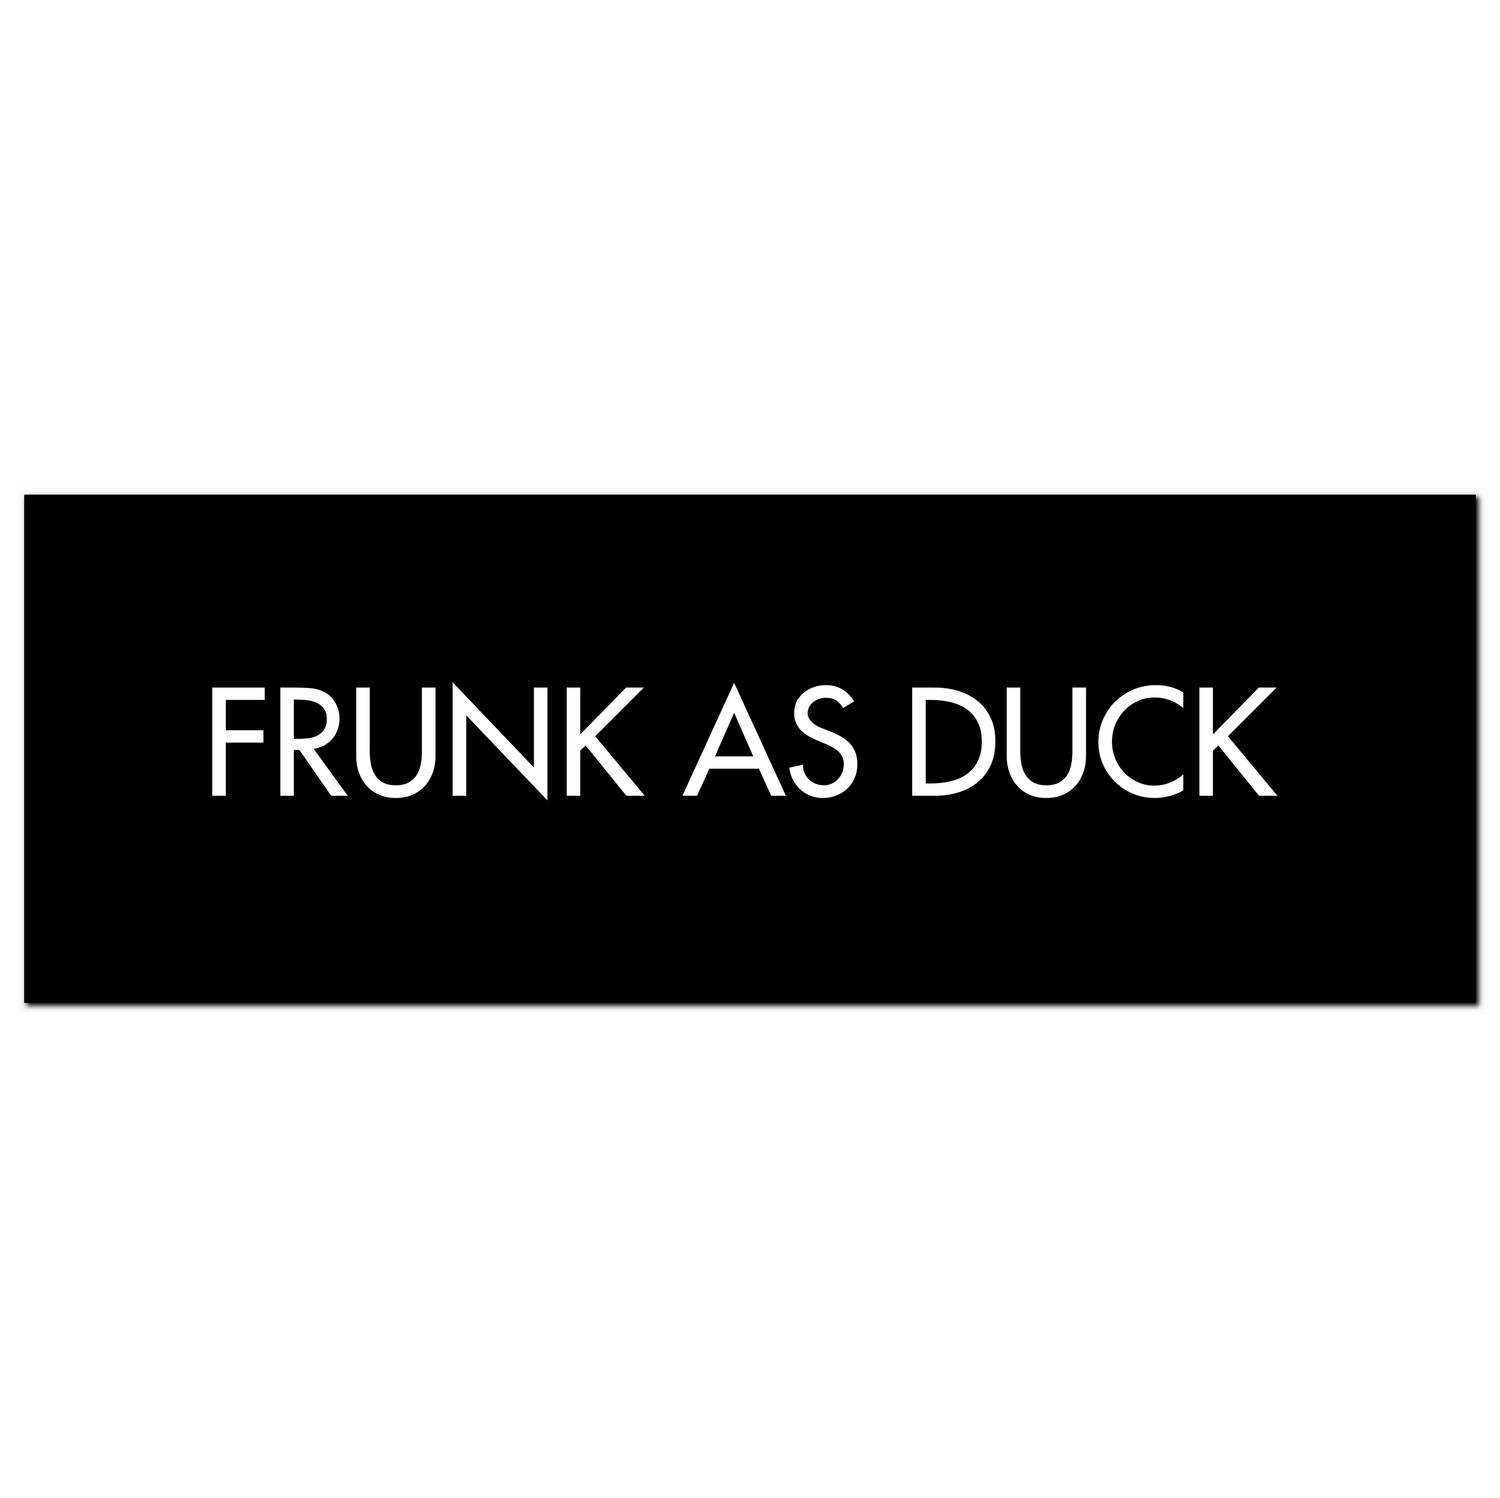 Frunk As Duck Silver Foil Plaque - Image 1